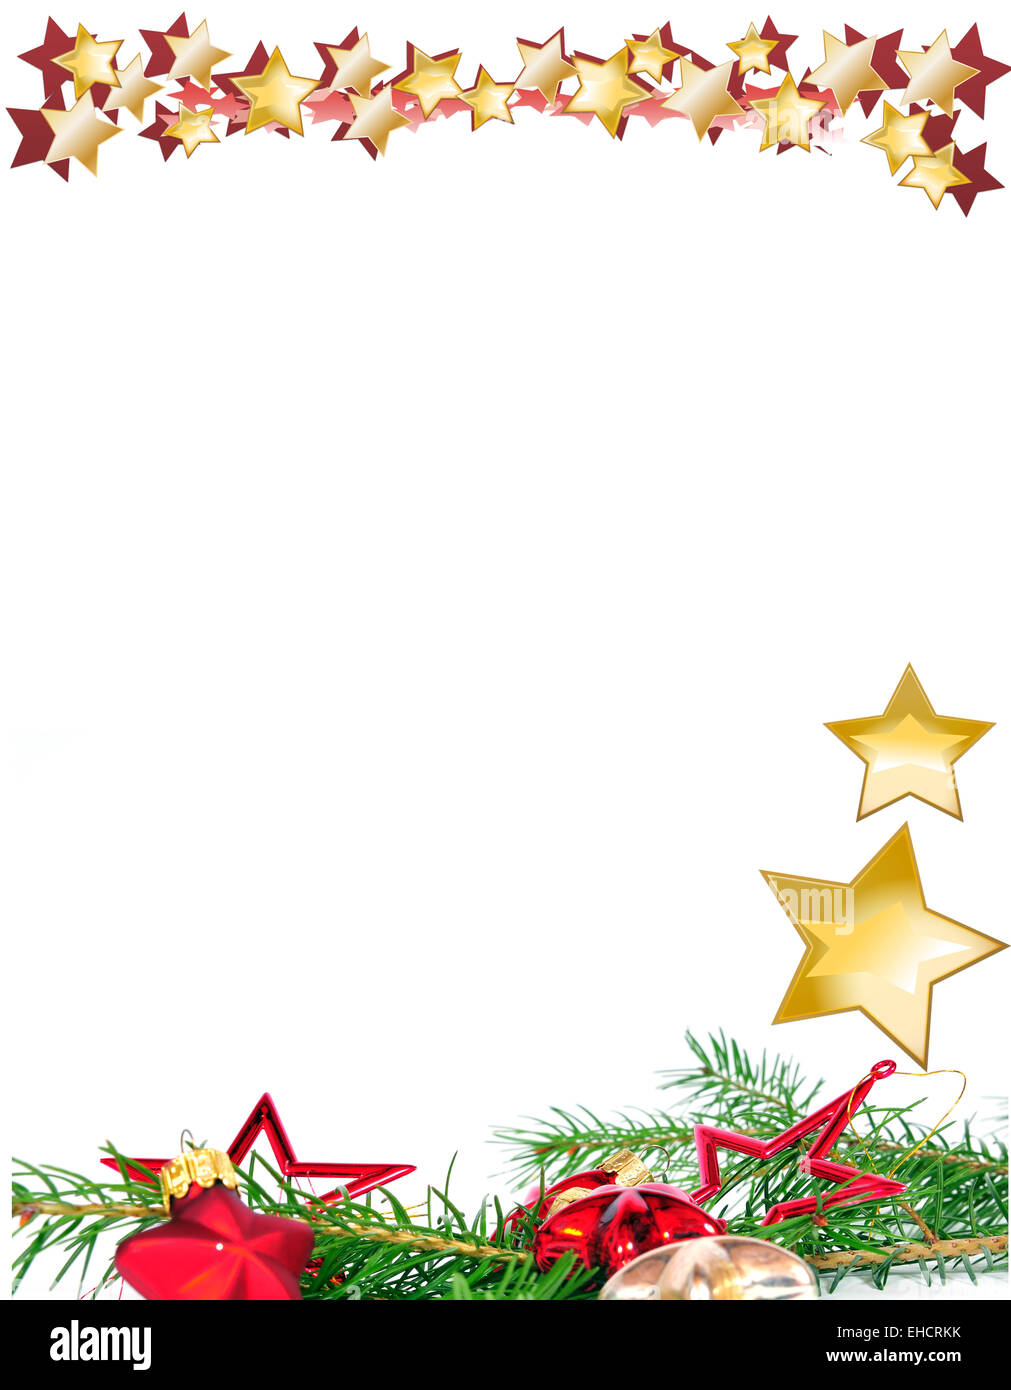 Hãy tận hưởng không khí Giáng Sinh và tạo cho email của mình một phong cách độc đáo với nền Christmas stationery background. Đừng bỏ lỡ cơ hội để thể hiện tình yêu thương đến bạn bè và người thân!